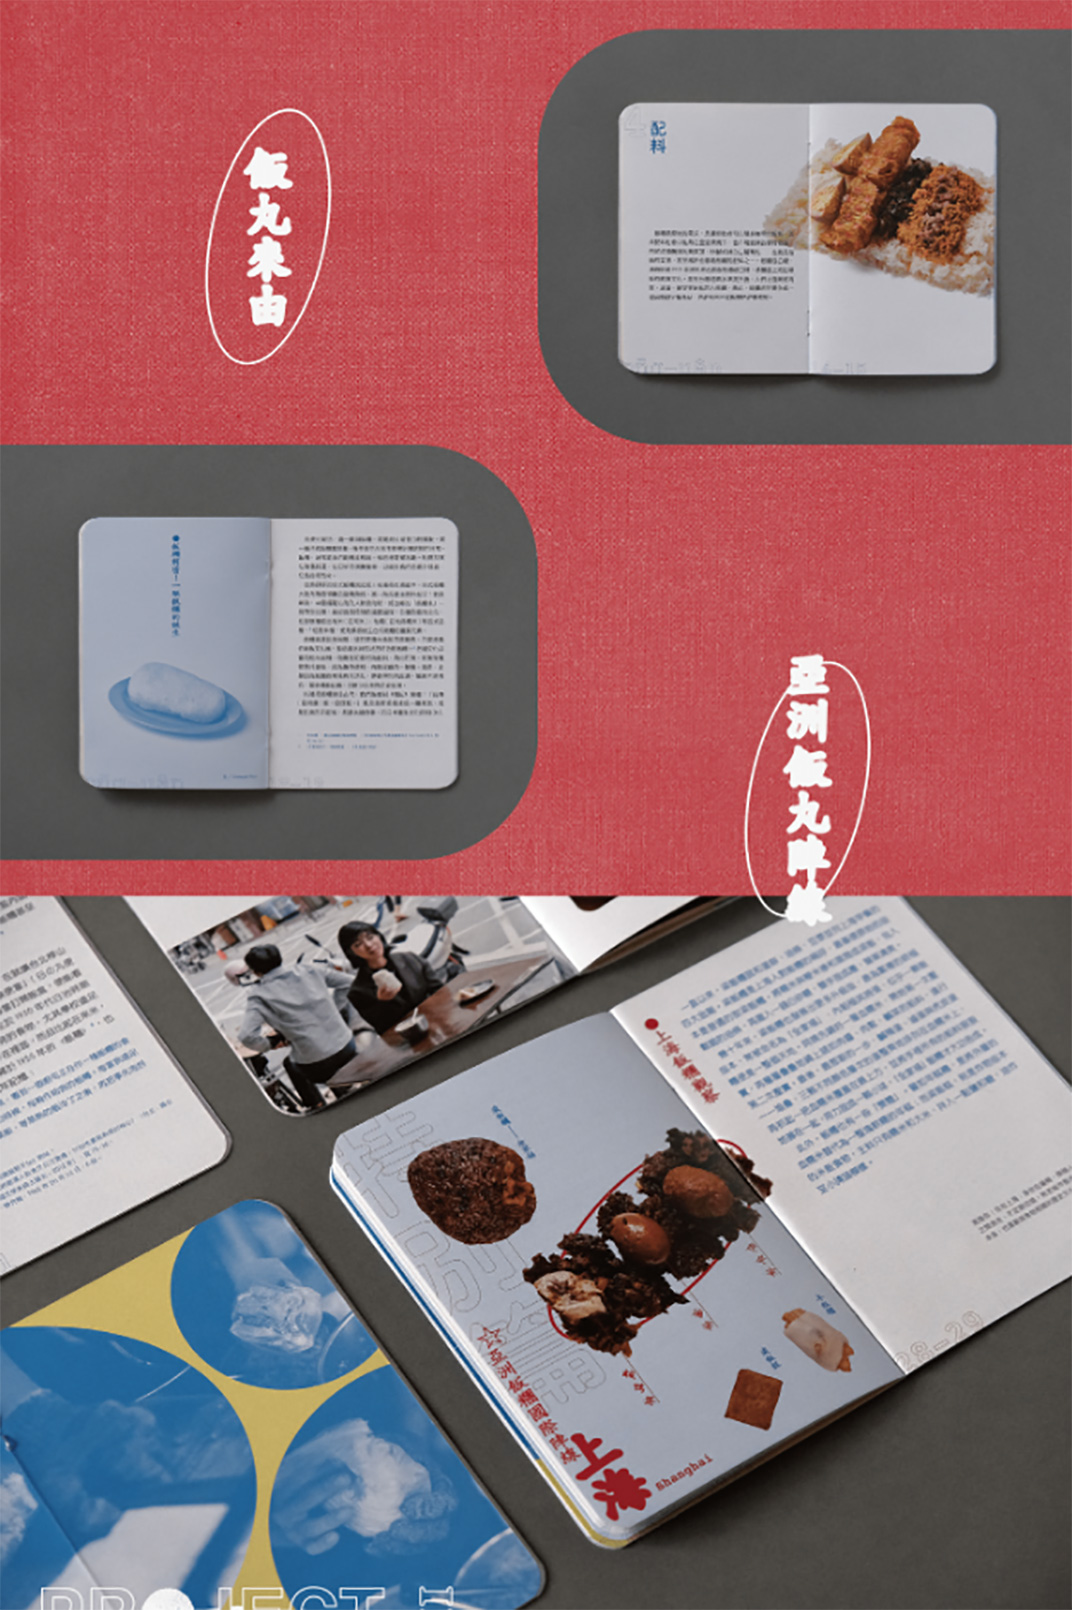 饭丸餐厅 台湾 字体设计 图形设计 排版设计 logo设计 vi设计 空间设计